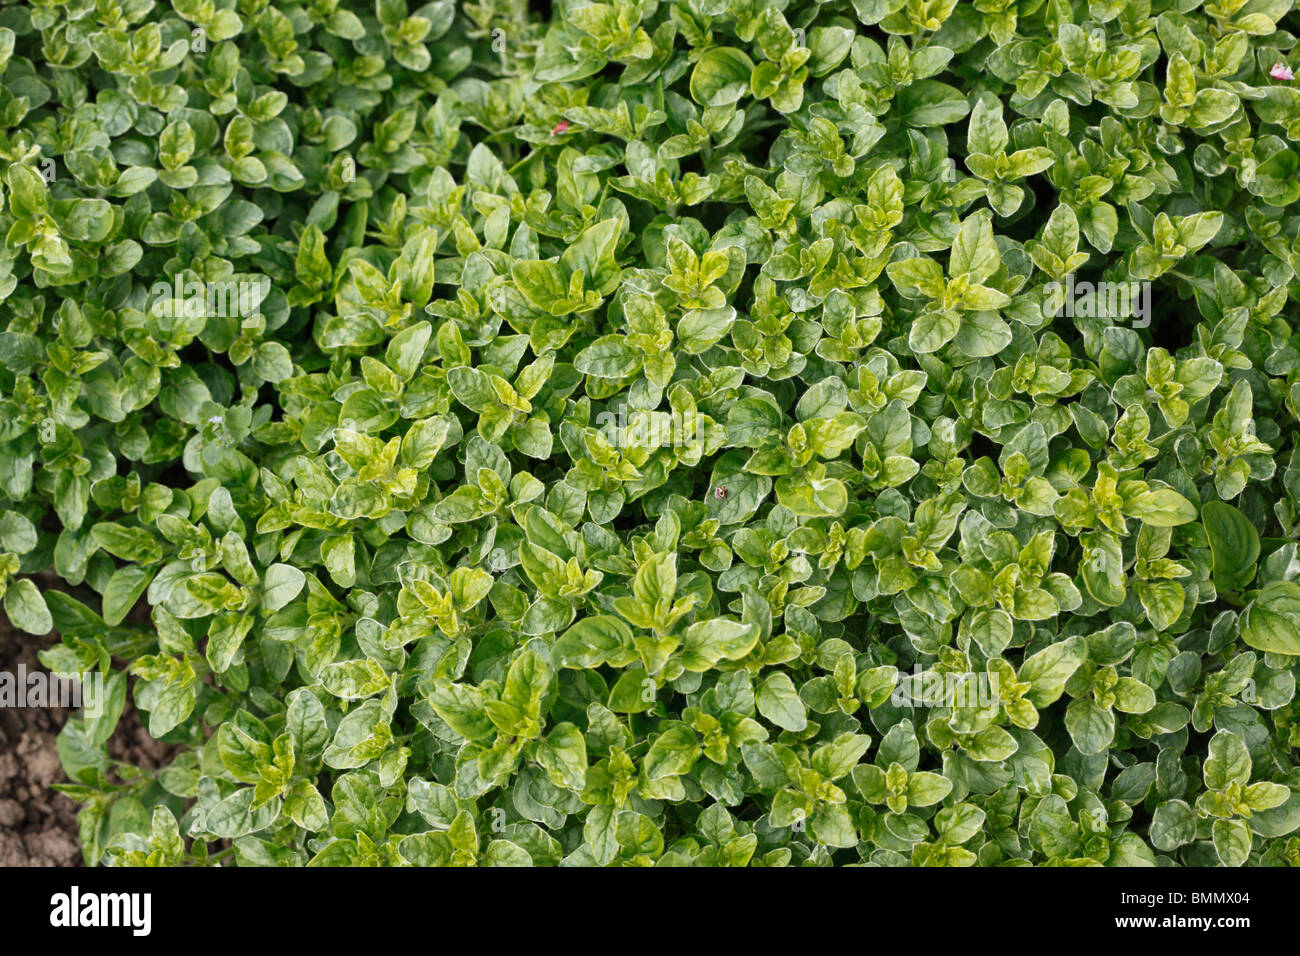 Oregano (Oreganum amanum) close up of plant Stock Photo